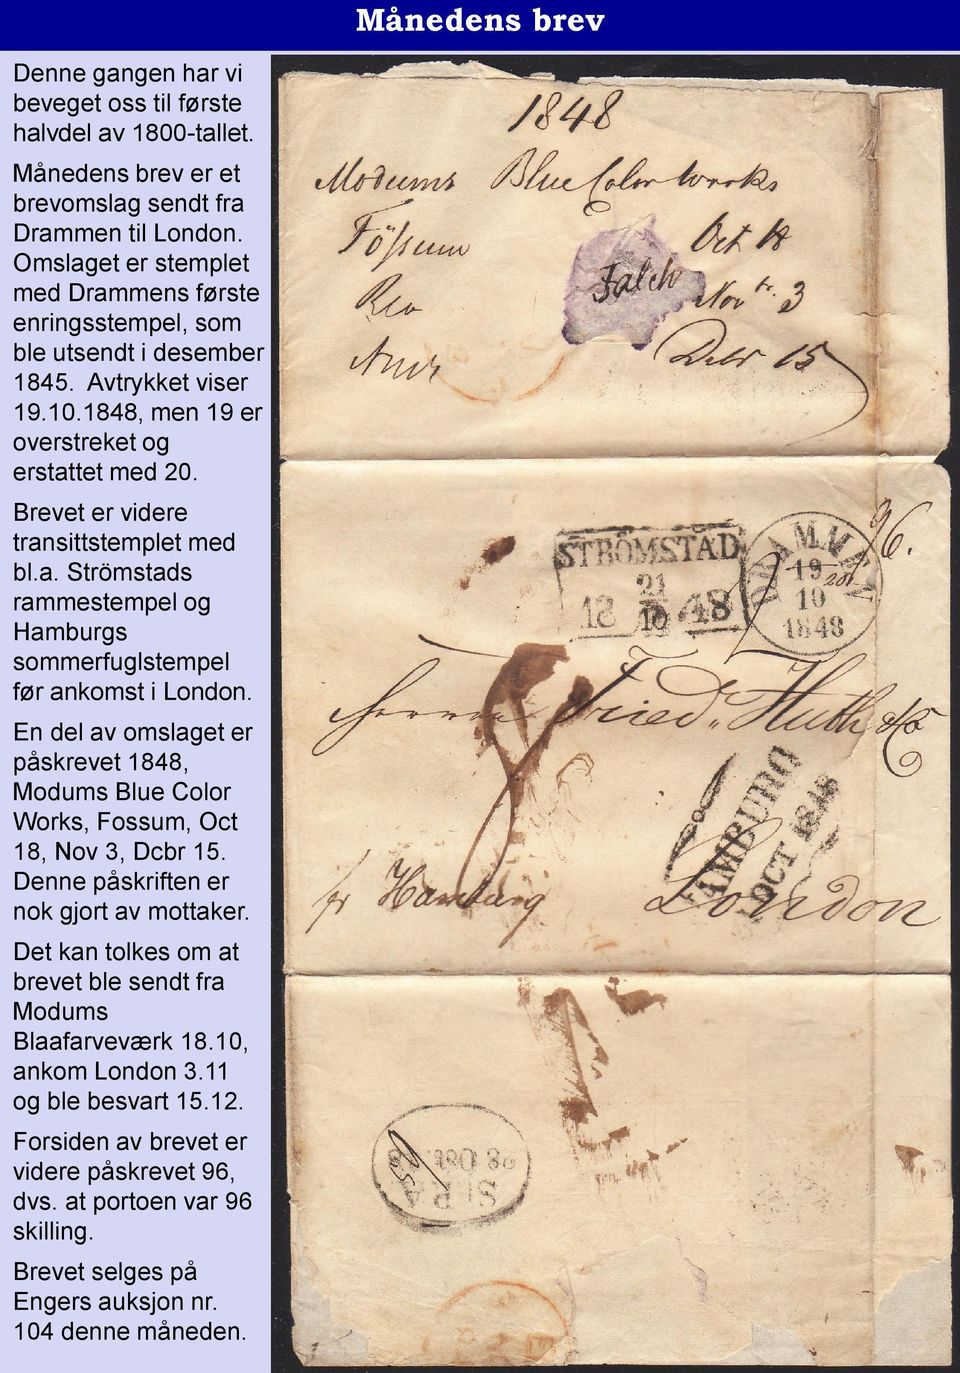 Brevet er videre transittstemplet med bl.a. Strömstads rammestempel og Hamburgs sommerfuglstempel før ankomst i London.